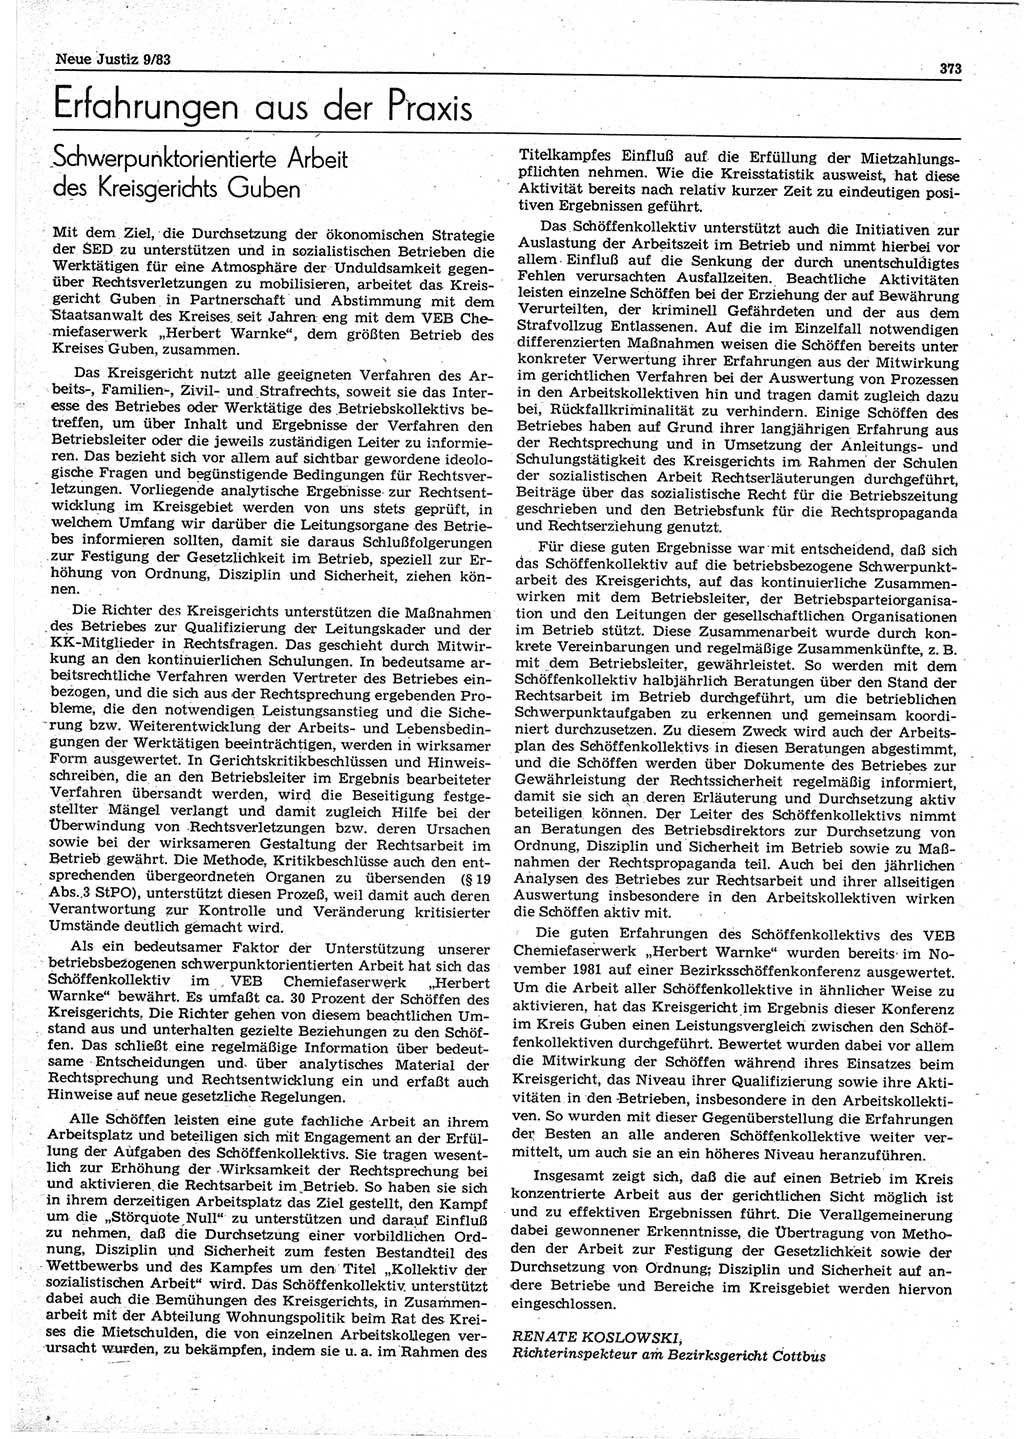 Neue Justiz (NJ), Zeitschrift für sozialistisches Recht und Gesetzlichkeit [Deutsche Demokratische Republik (DDR)], 37. Jahrgang 1983, Seite 373 (NJ DDR 1983, S. 373)